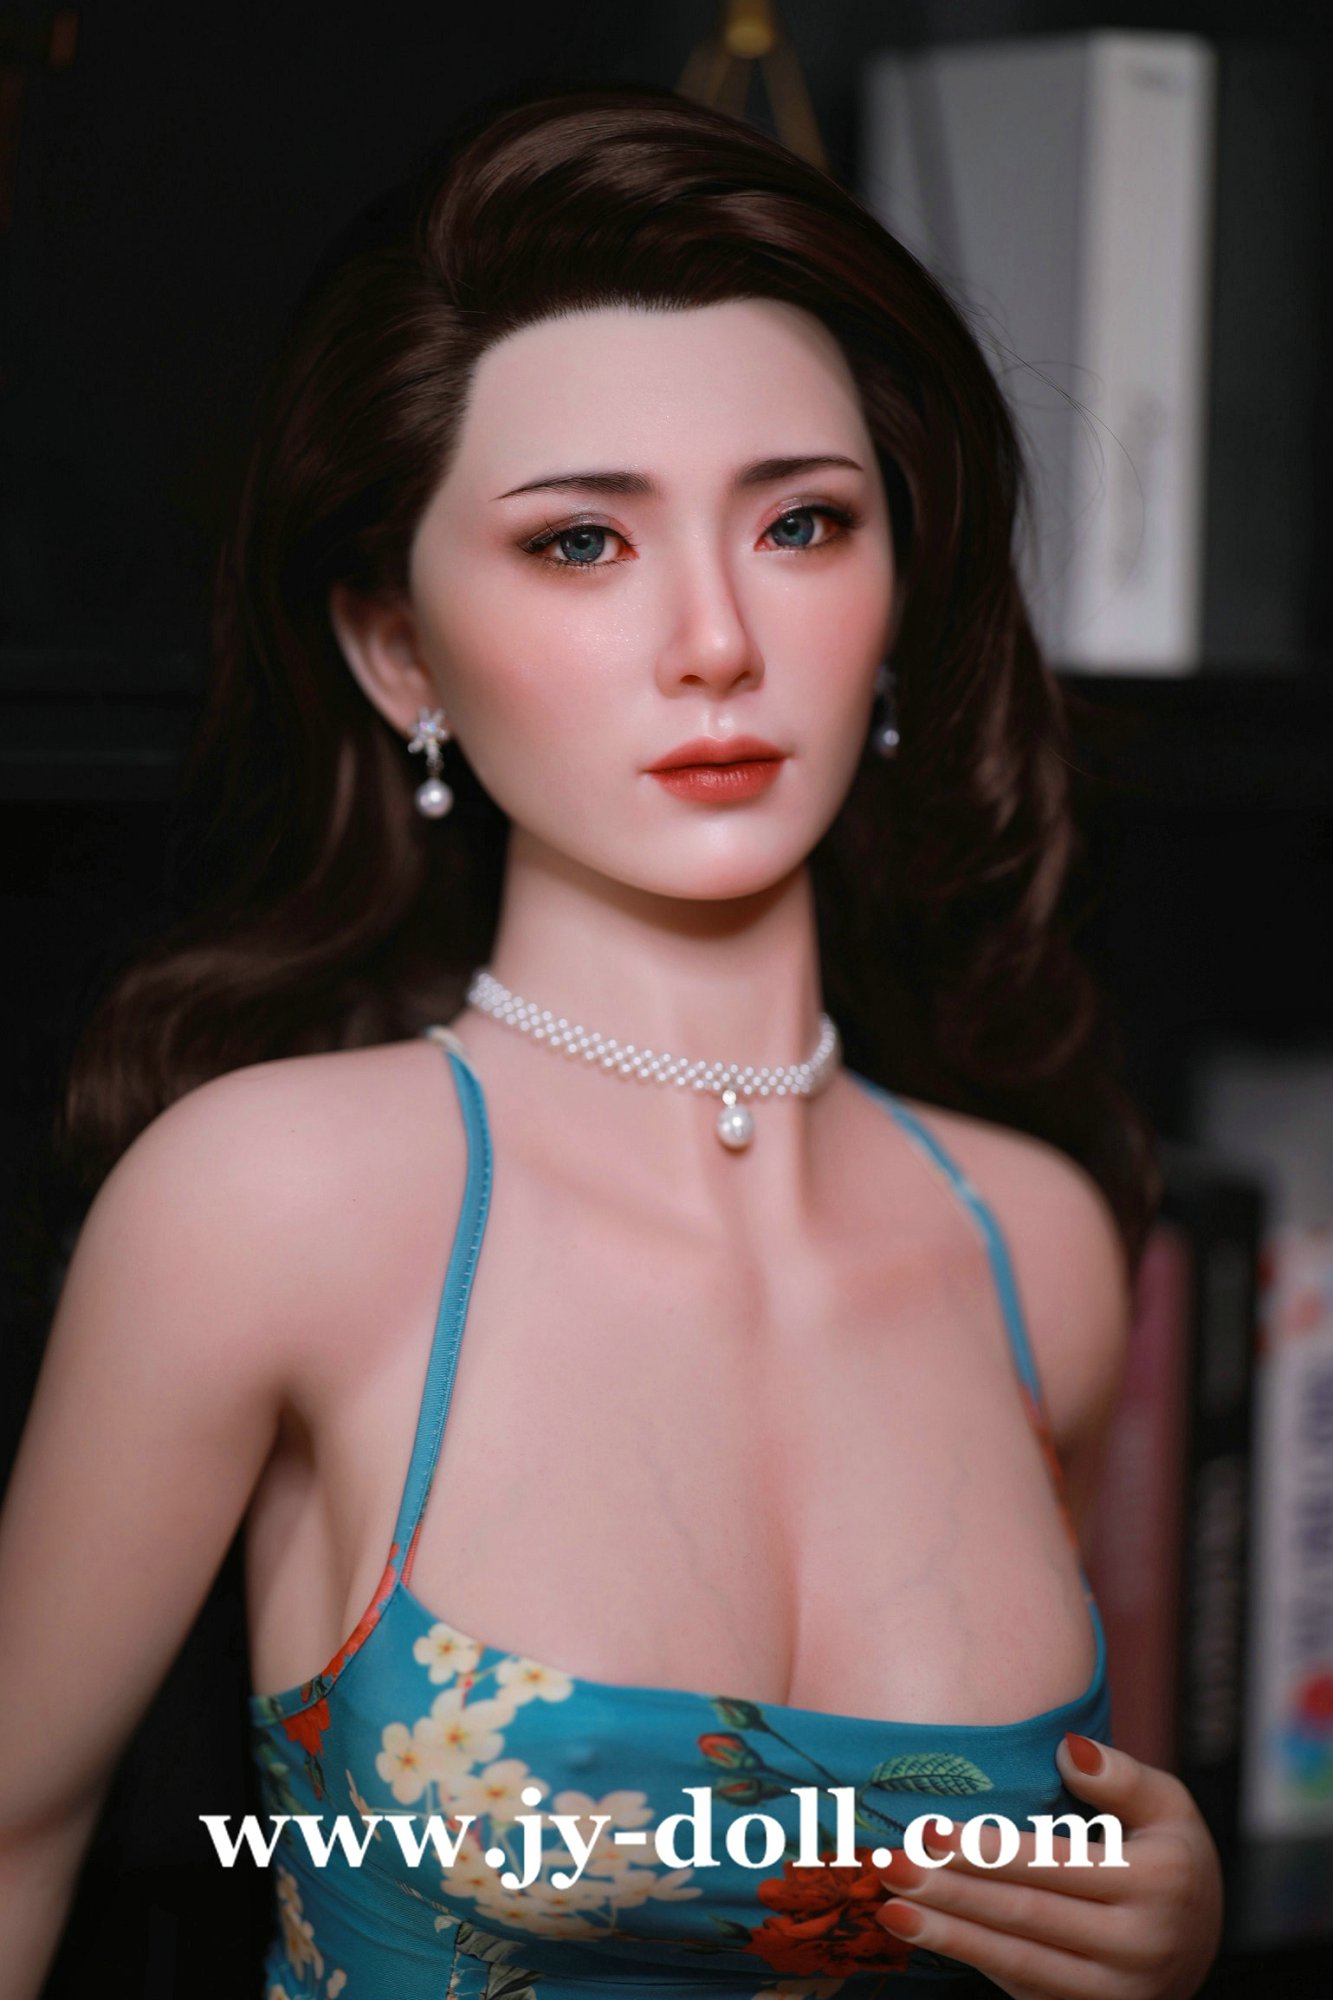 JY Doll 168cm full silicone big boobs love doll Jane